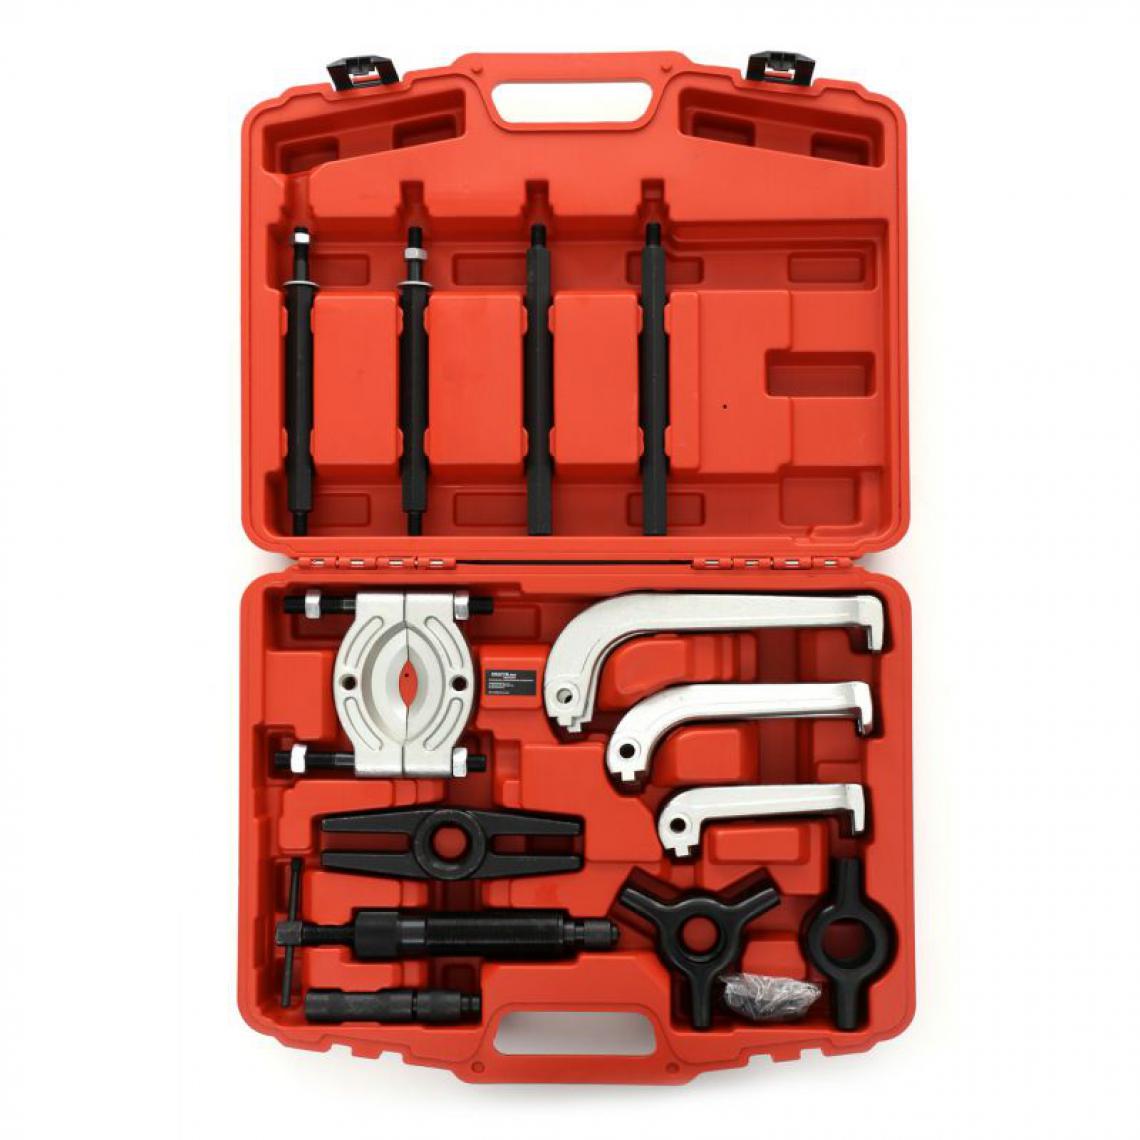 Hucoco - DCRAFT - Kit d'extracteurs de roulement - 21 outils - Pour extraire les roulements - Rouge - Boulonneuse